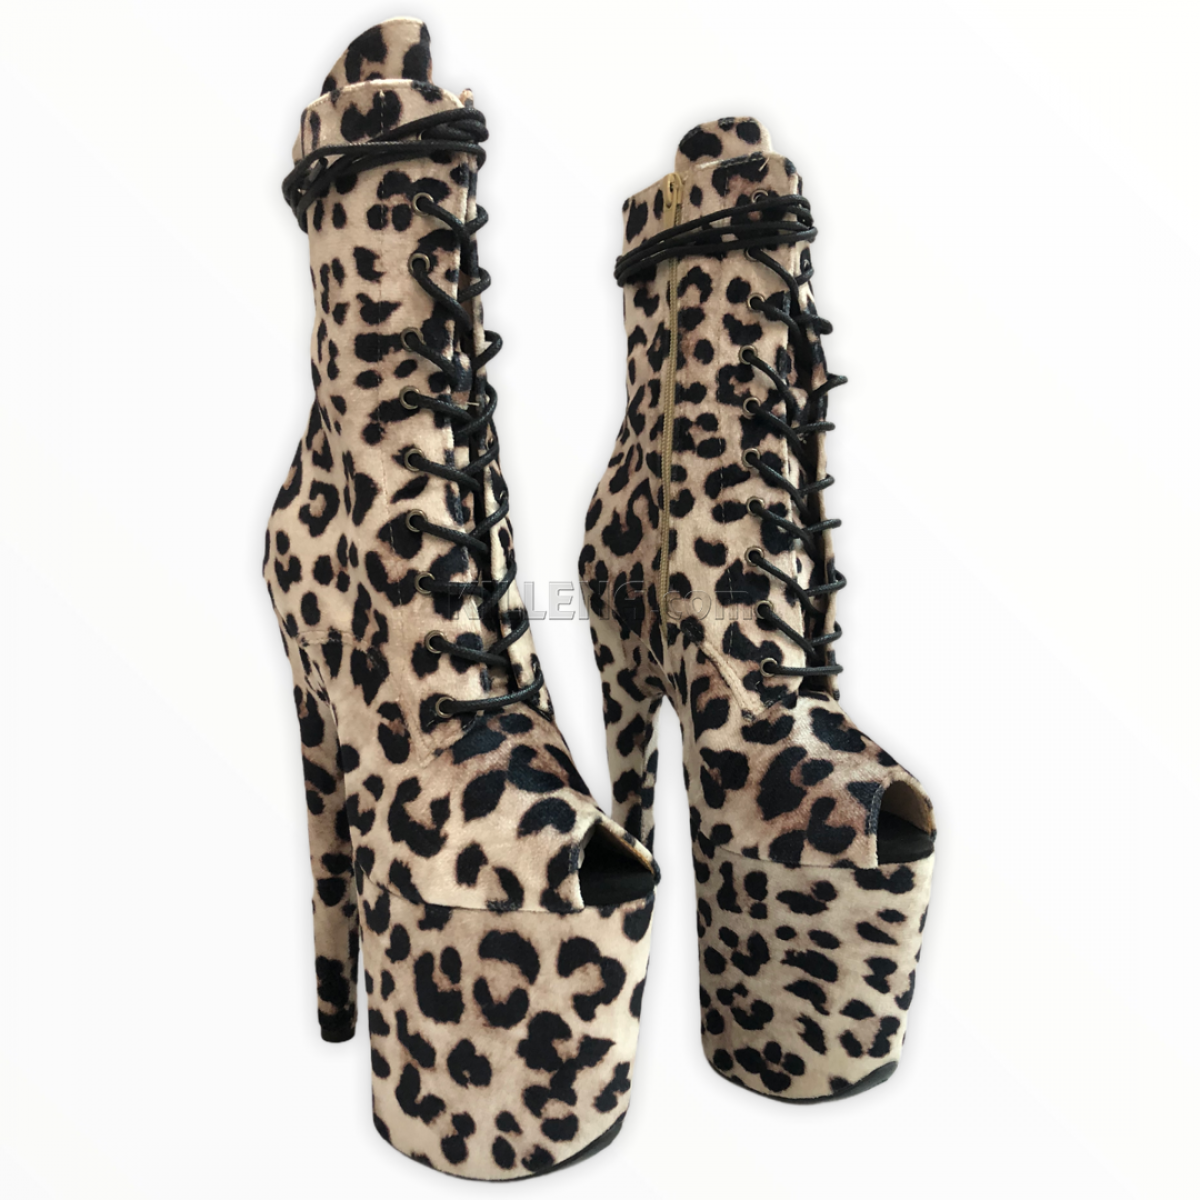 Леопардовые открытые ботиночки killena для exotic dance